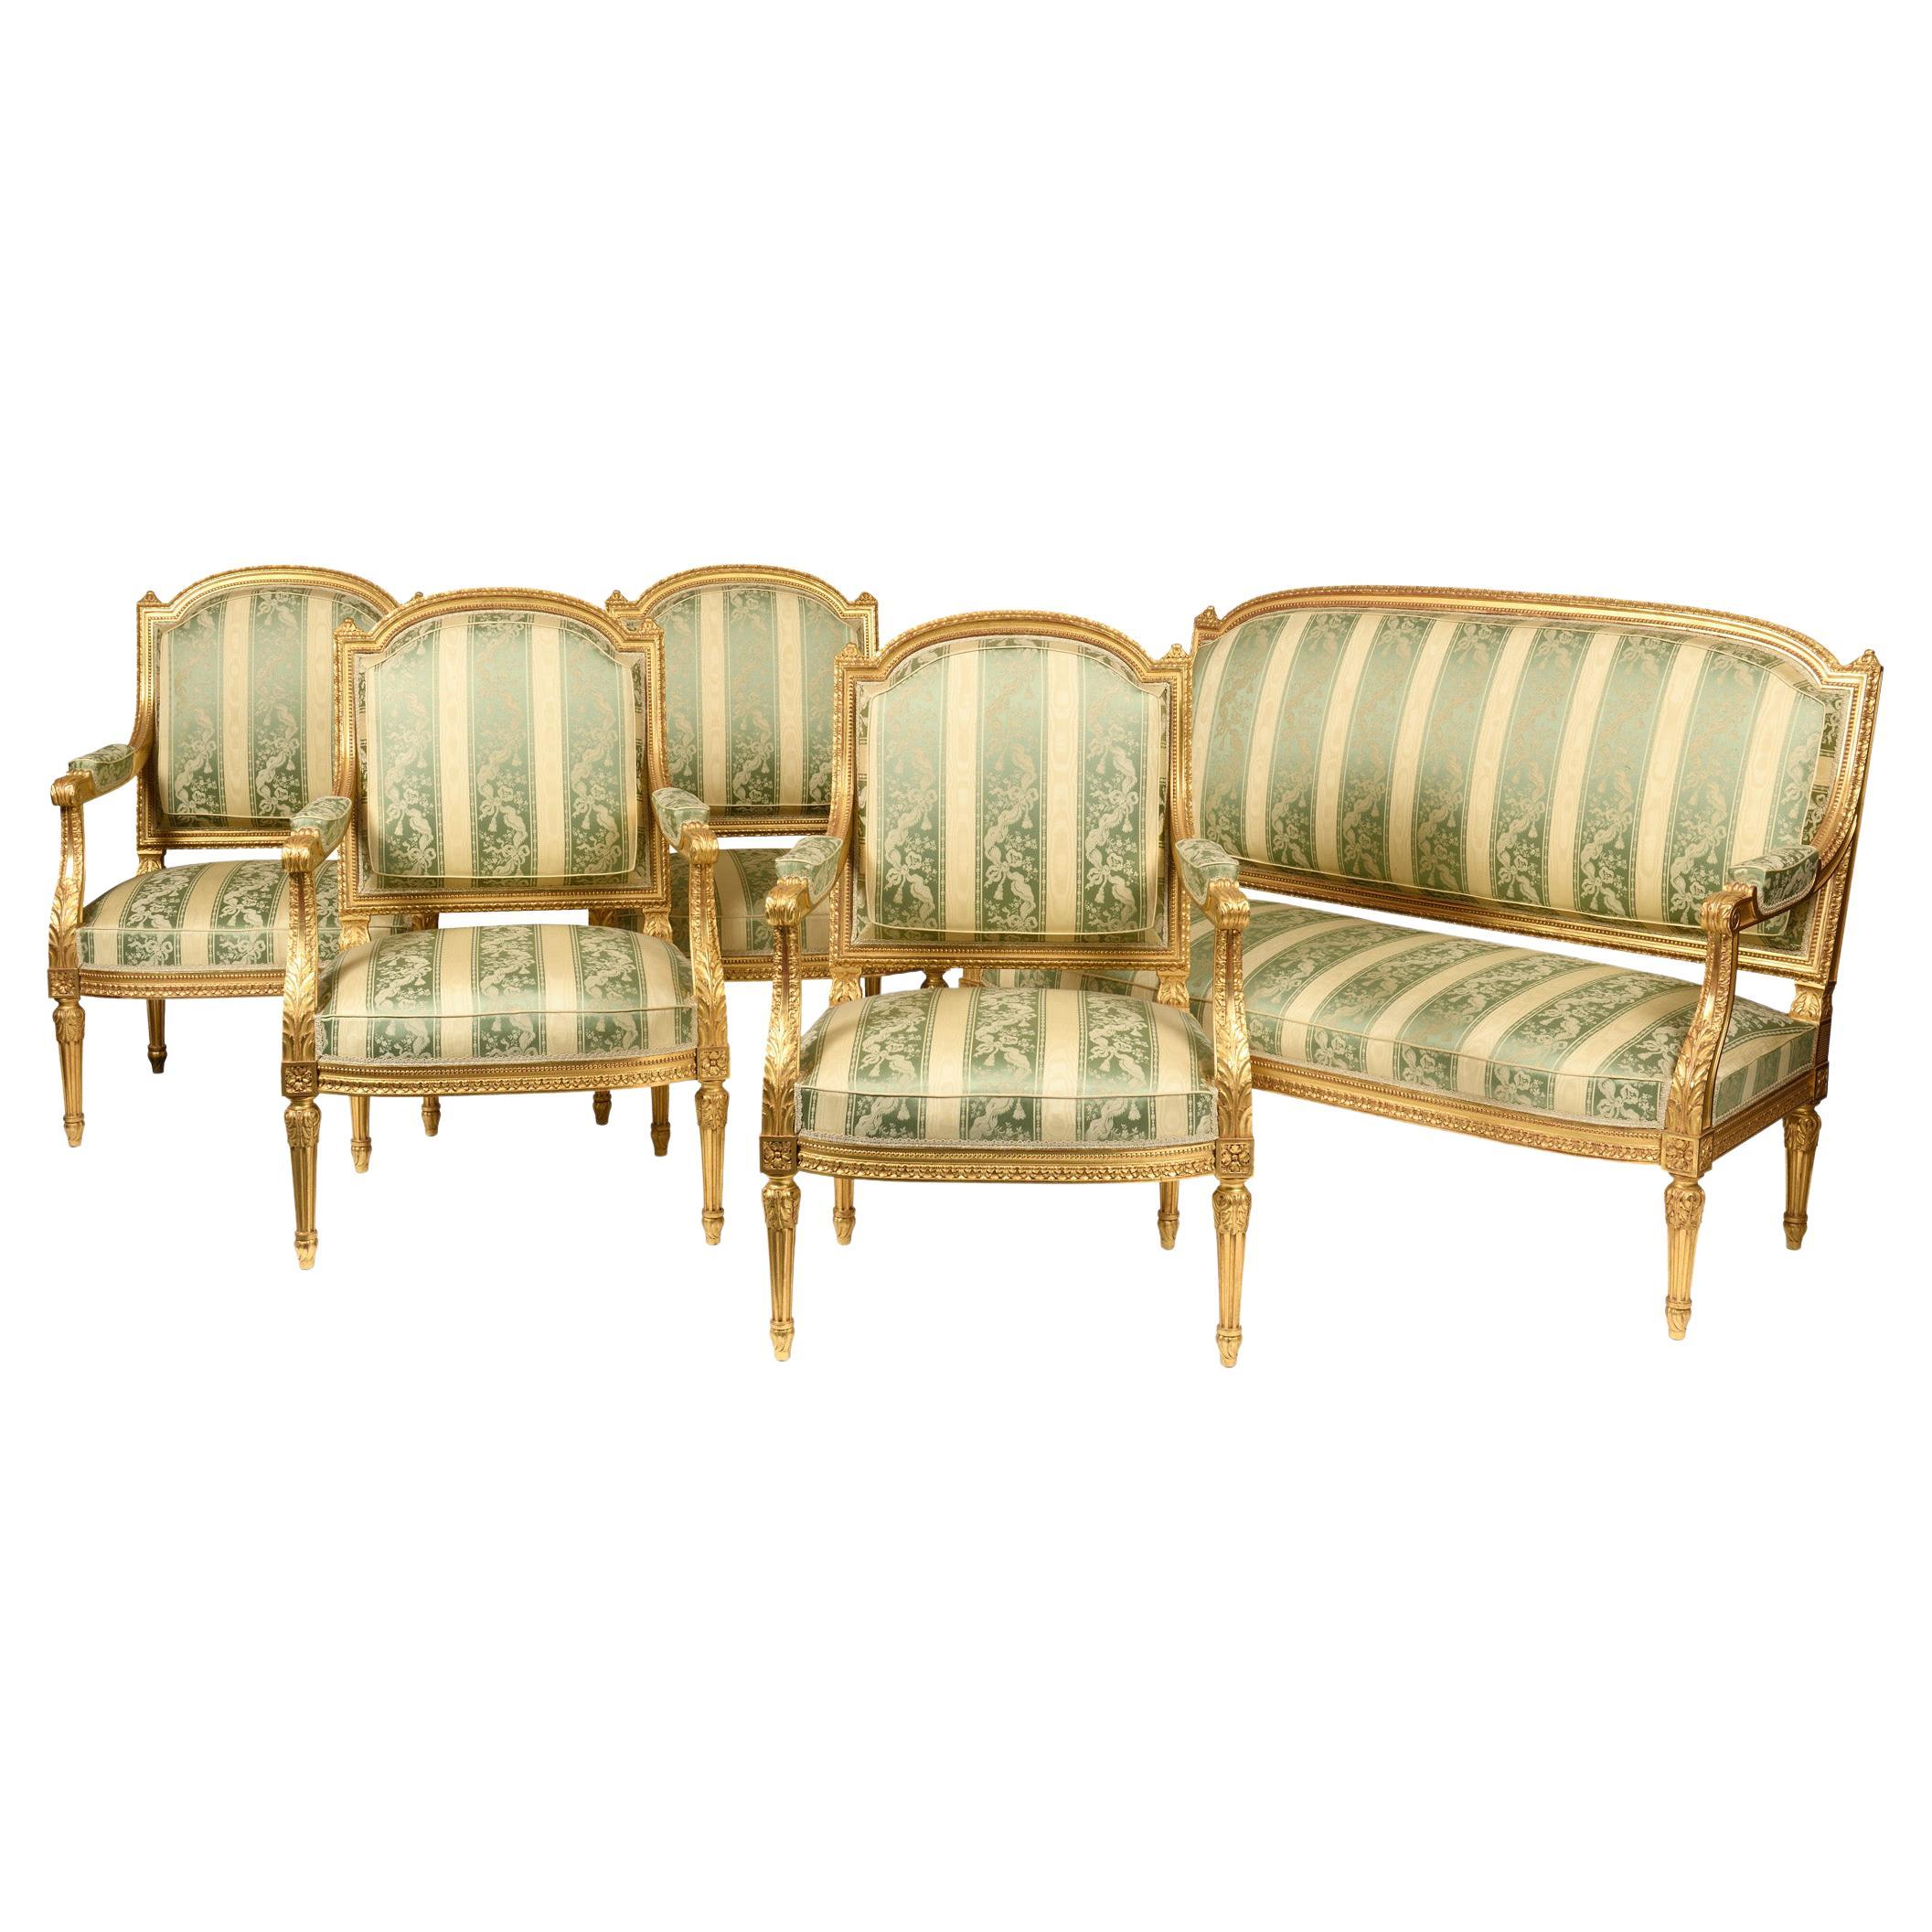 Ensemble de salon comprenant un canapé et 4 fauteuils en bois doré de style Louis XVI